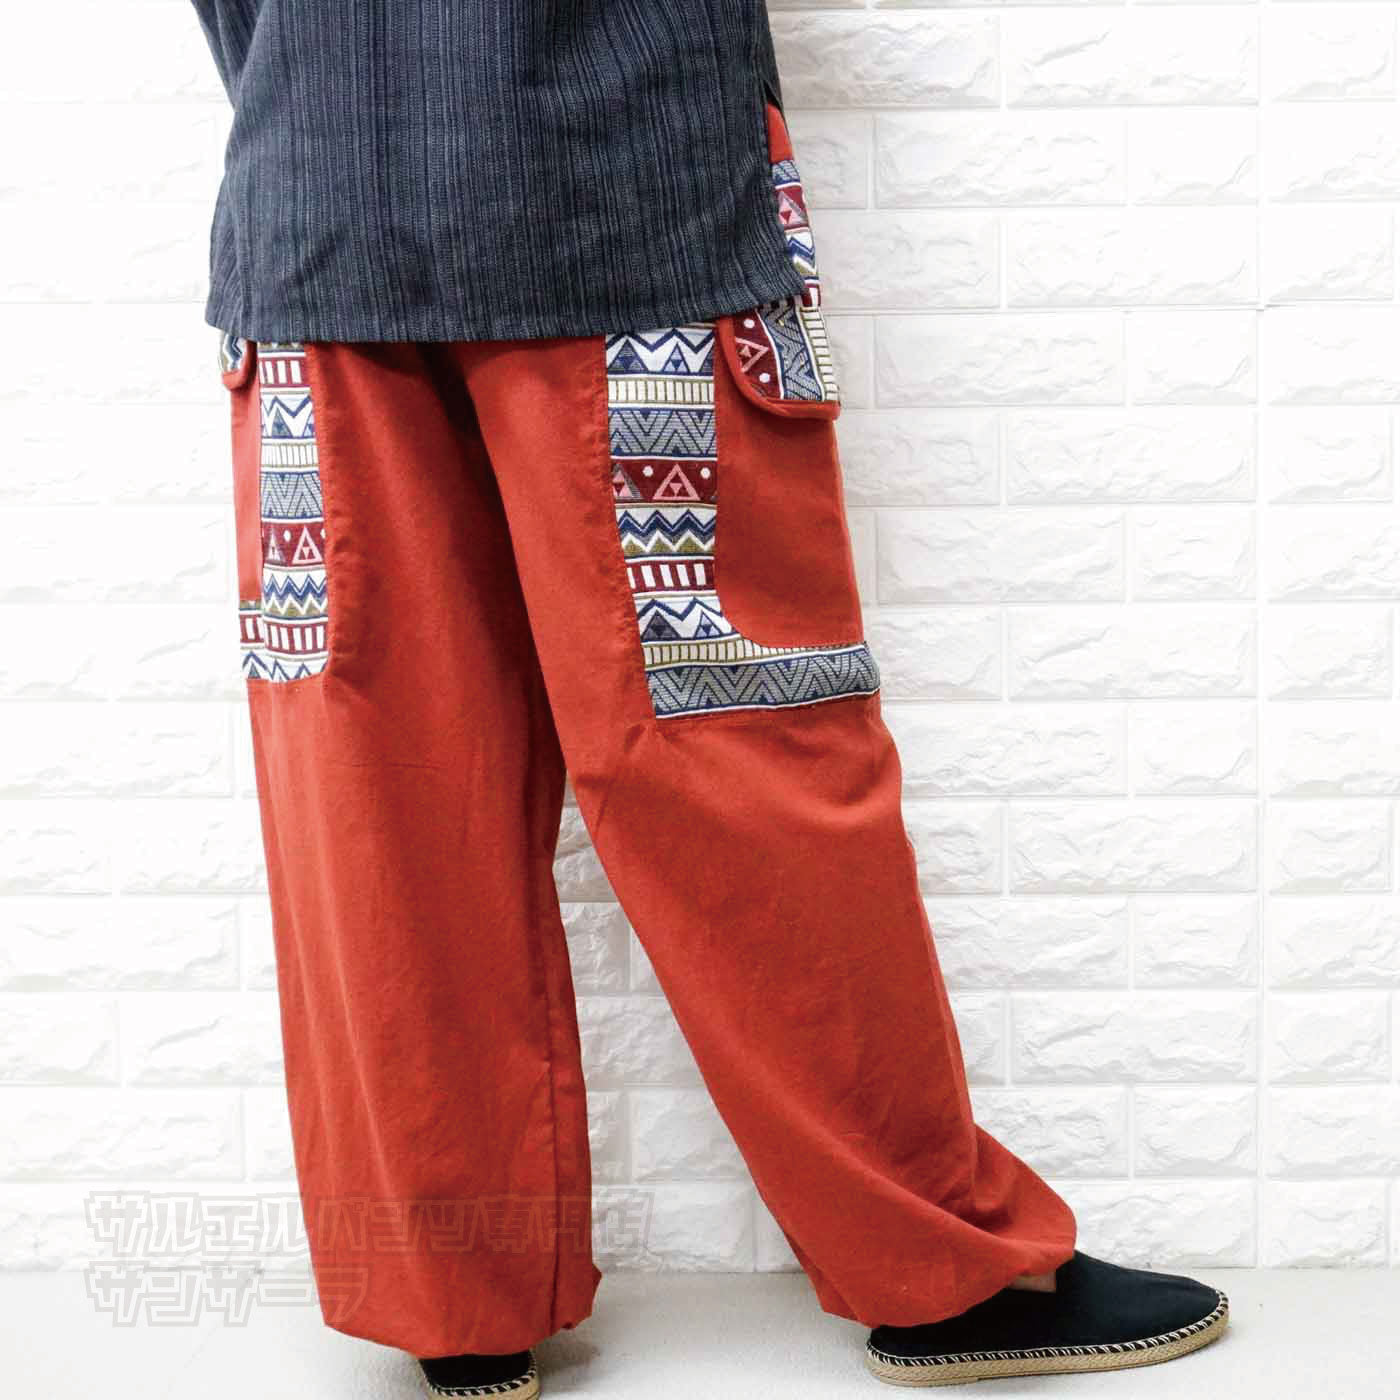 ワイドパンツ カーゴパンツ サルエルパンツ アラジンパンツ メンズ レディース 大きいサイズ ゆったりサイズ 民族柄 ポケット ヨガ ダンス エスニック アジアン ファッションブラック